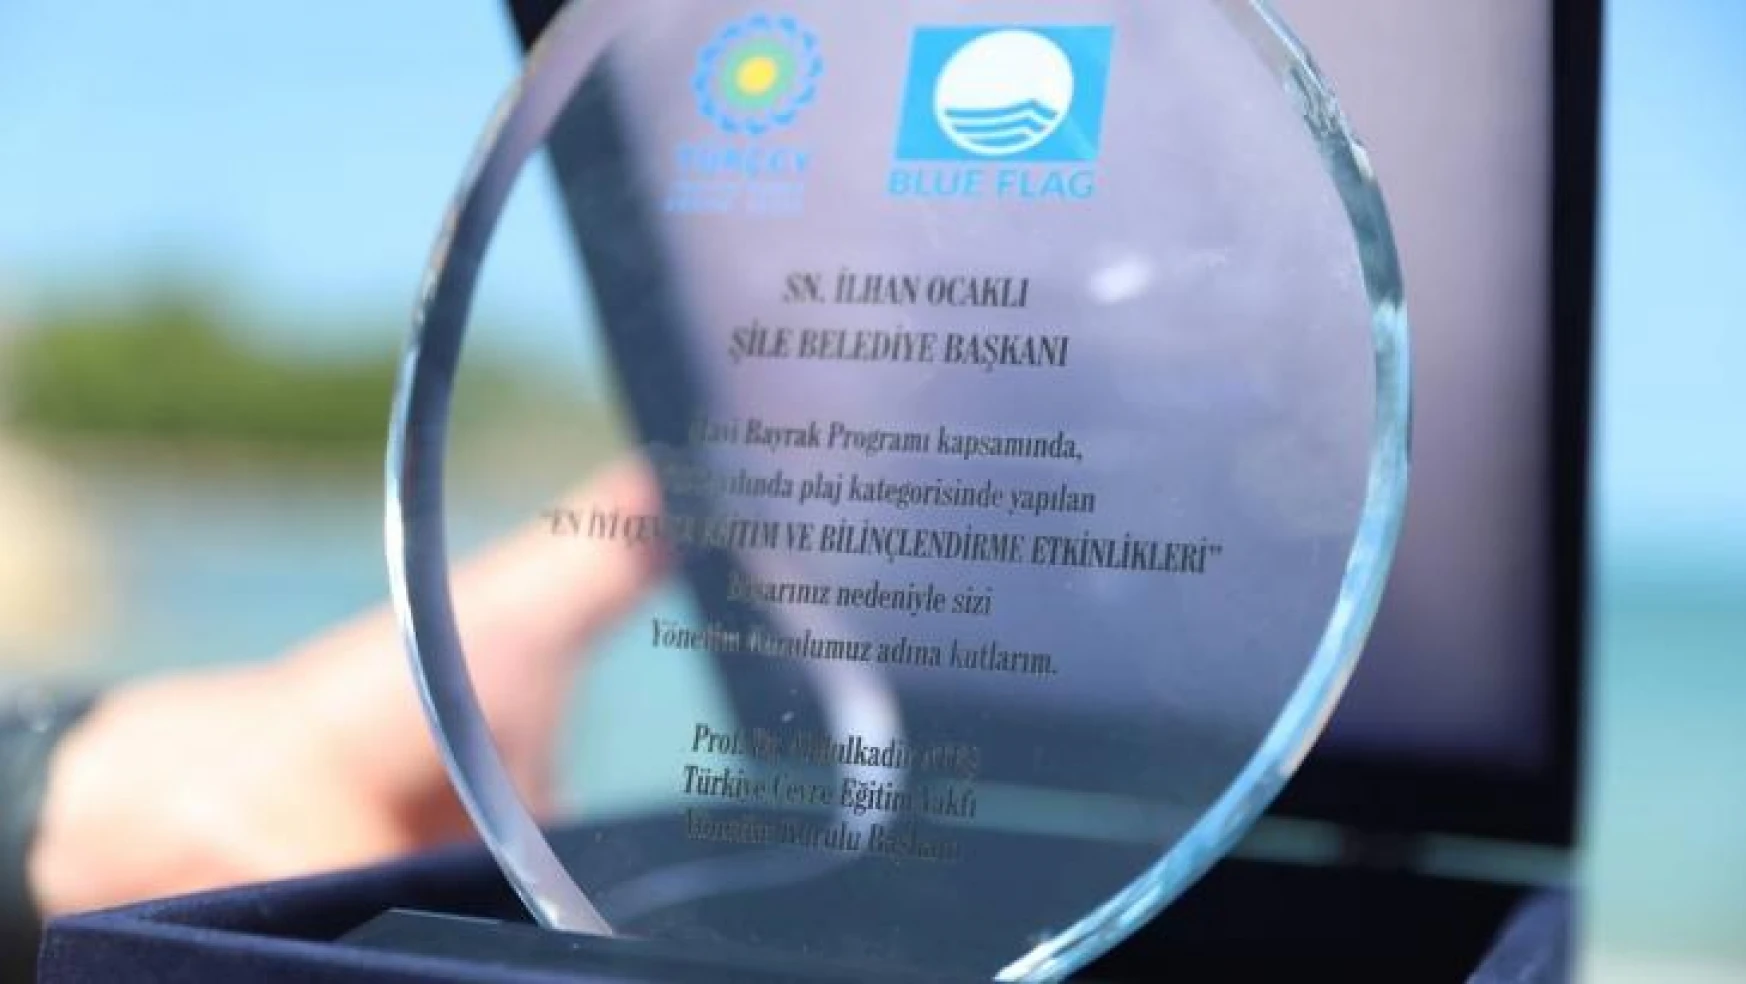 En İyi Çevre Eğitim Etkinlikleri Ödülü Şile Belediyesi'nin